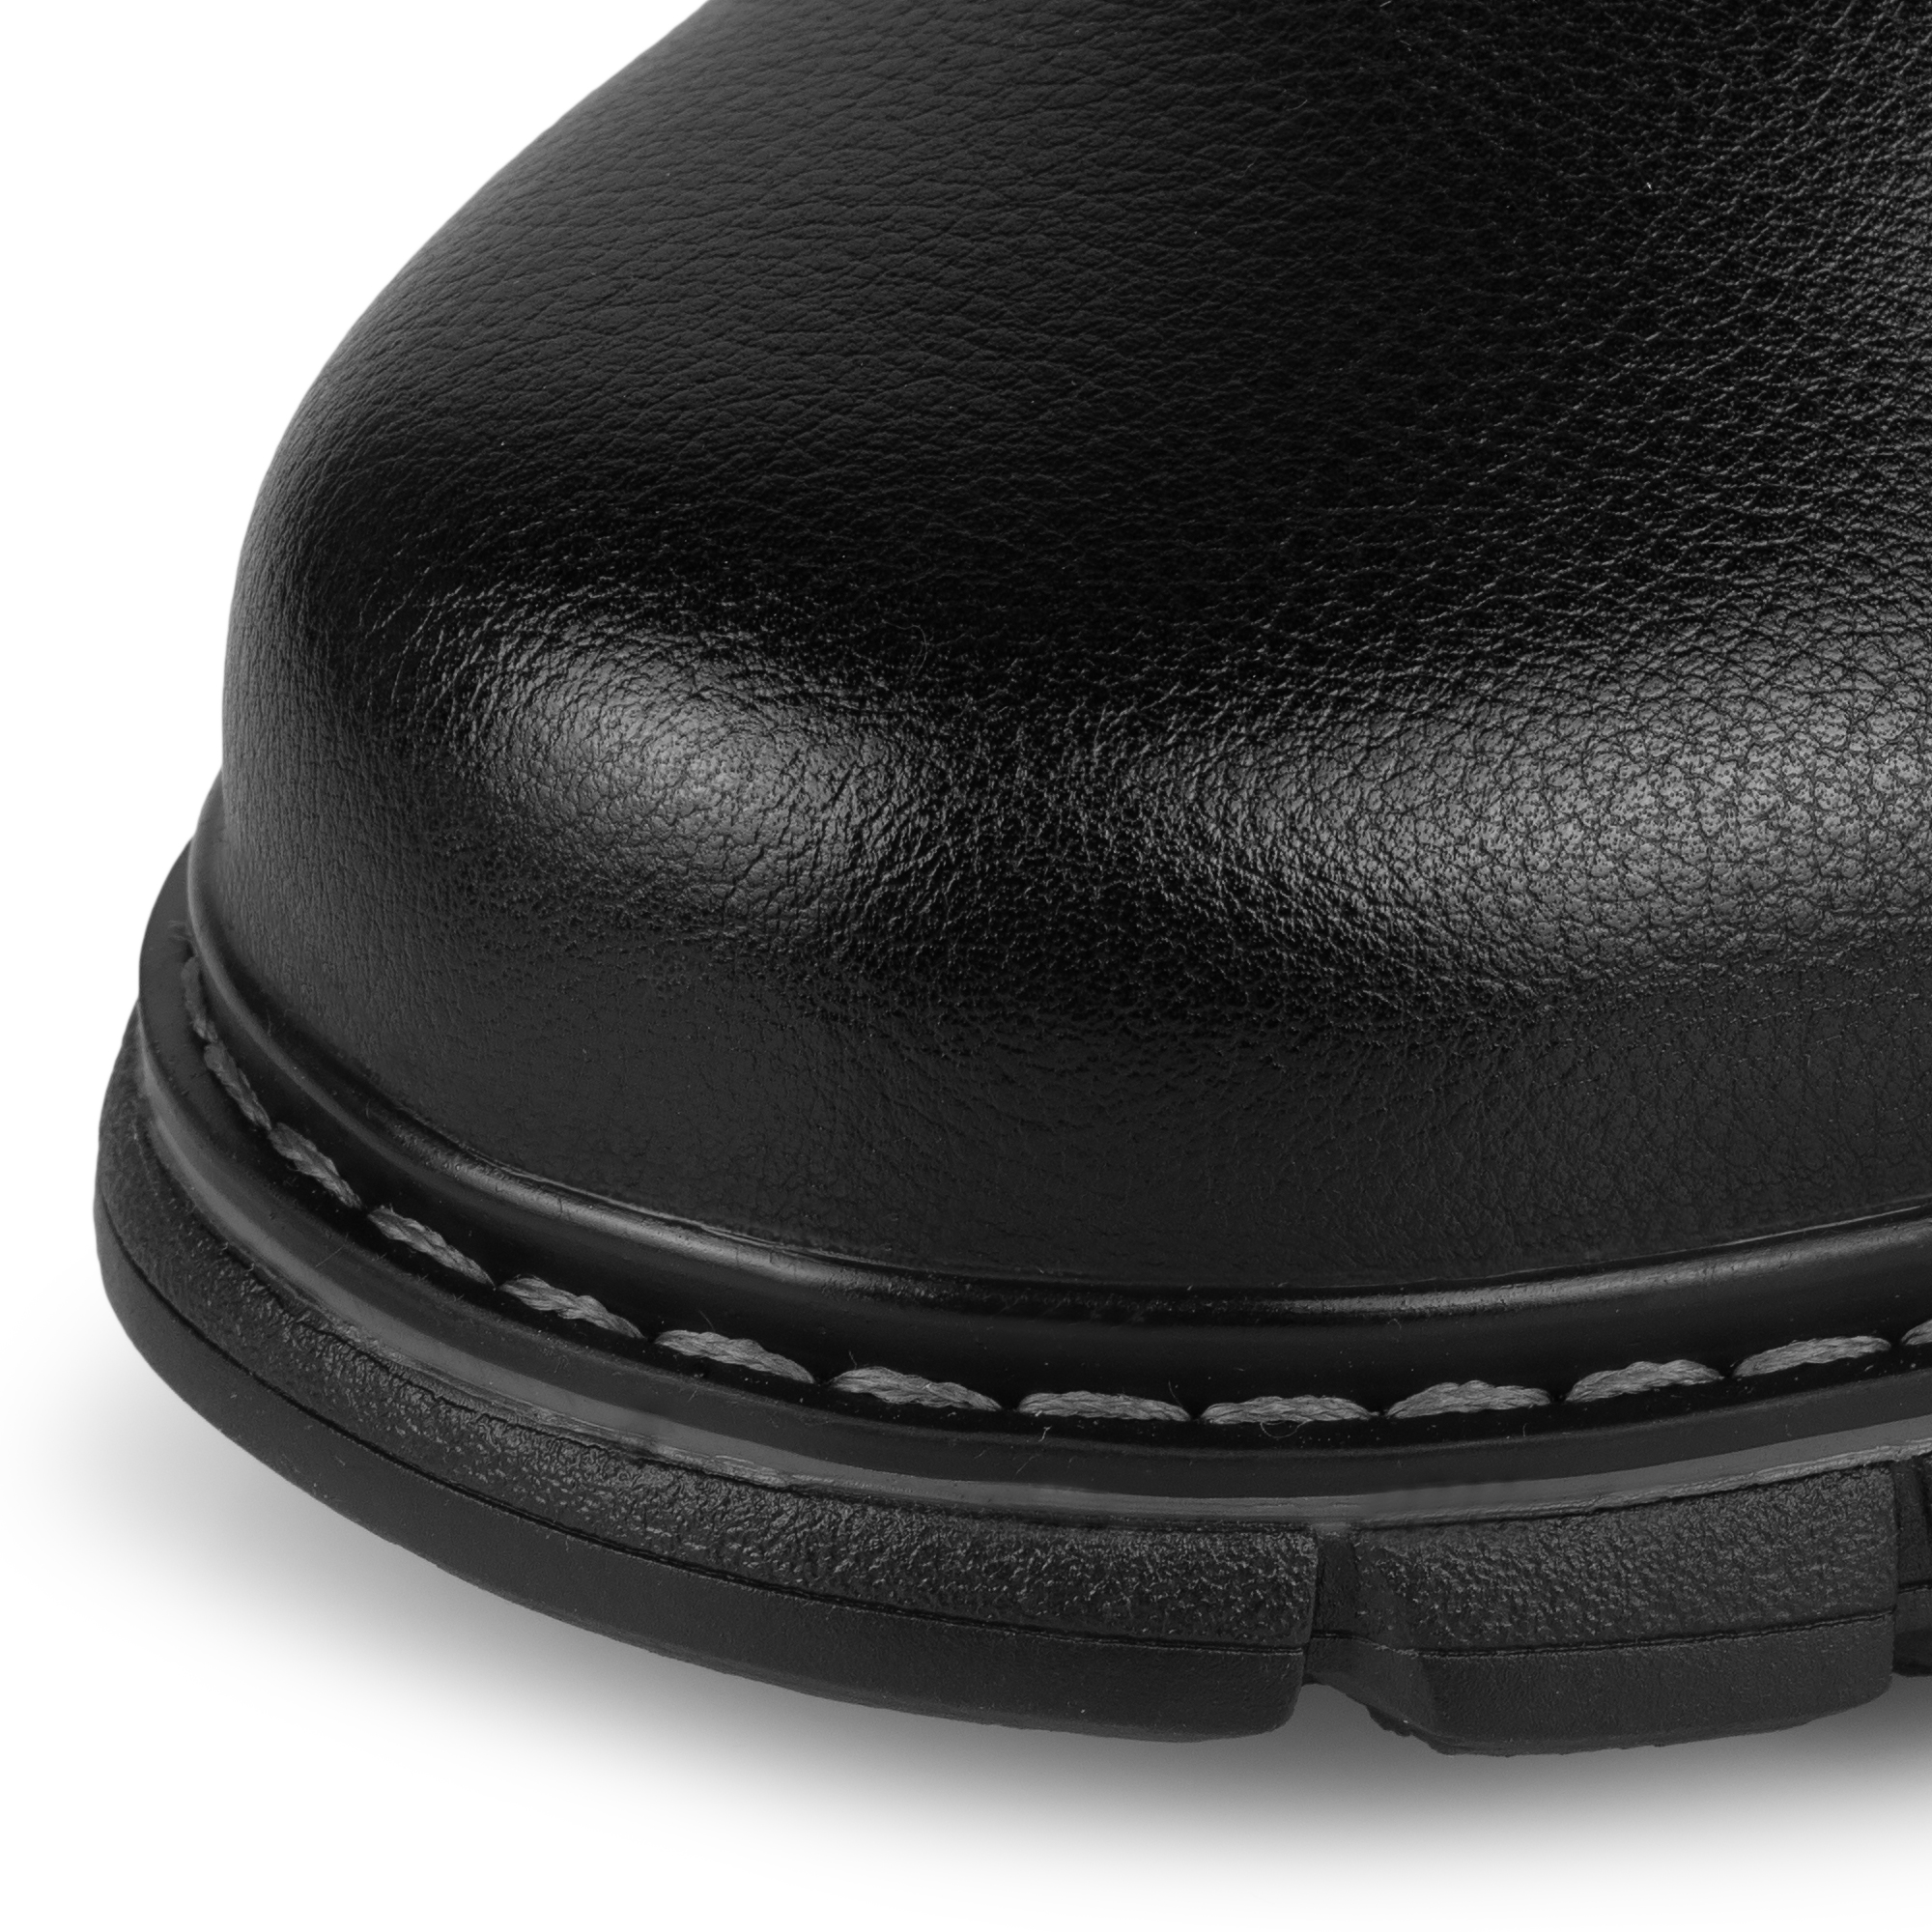 Обувь для мальчиков MUNZ YOUNG 116-429A-5602, цвет черный, размер 37 - фото 6